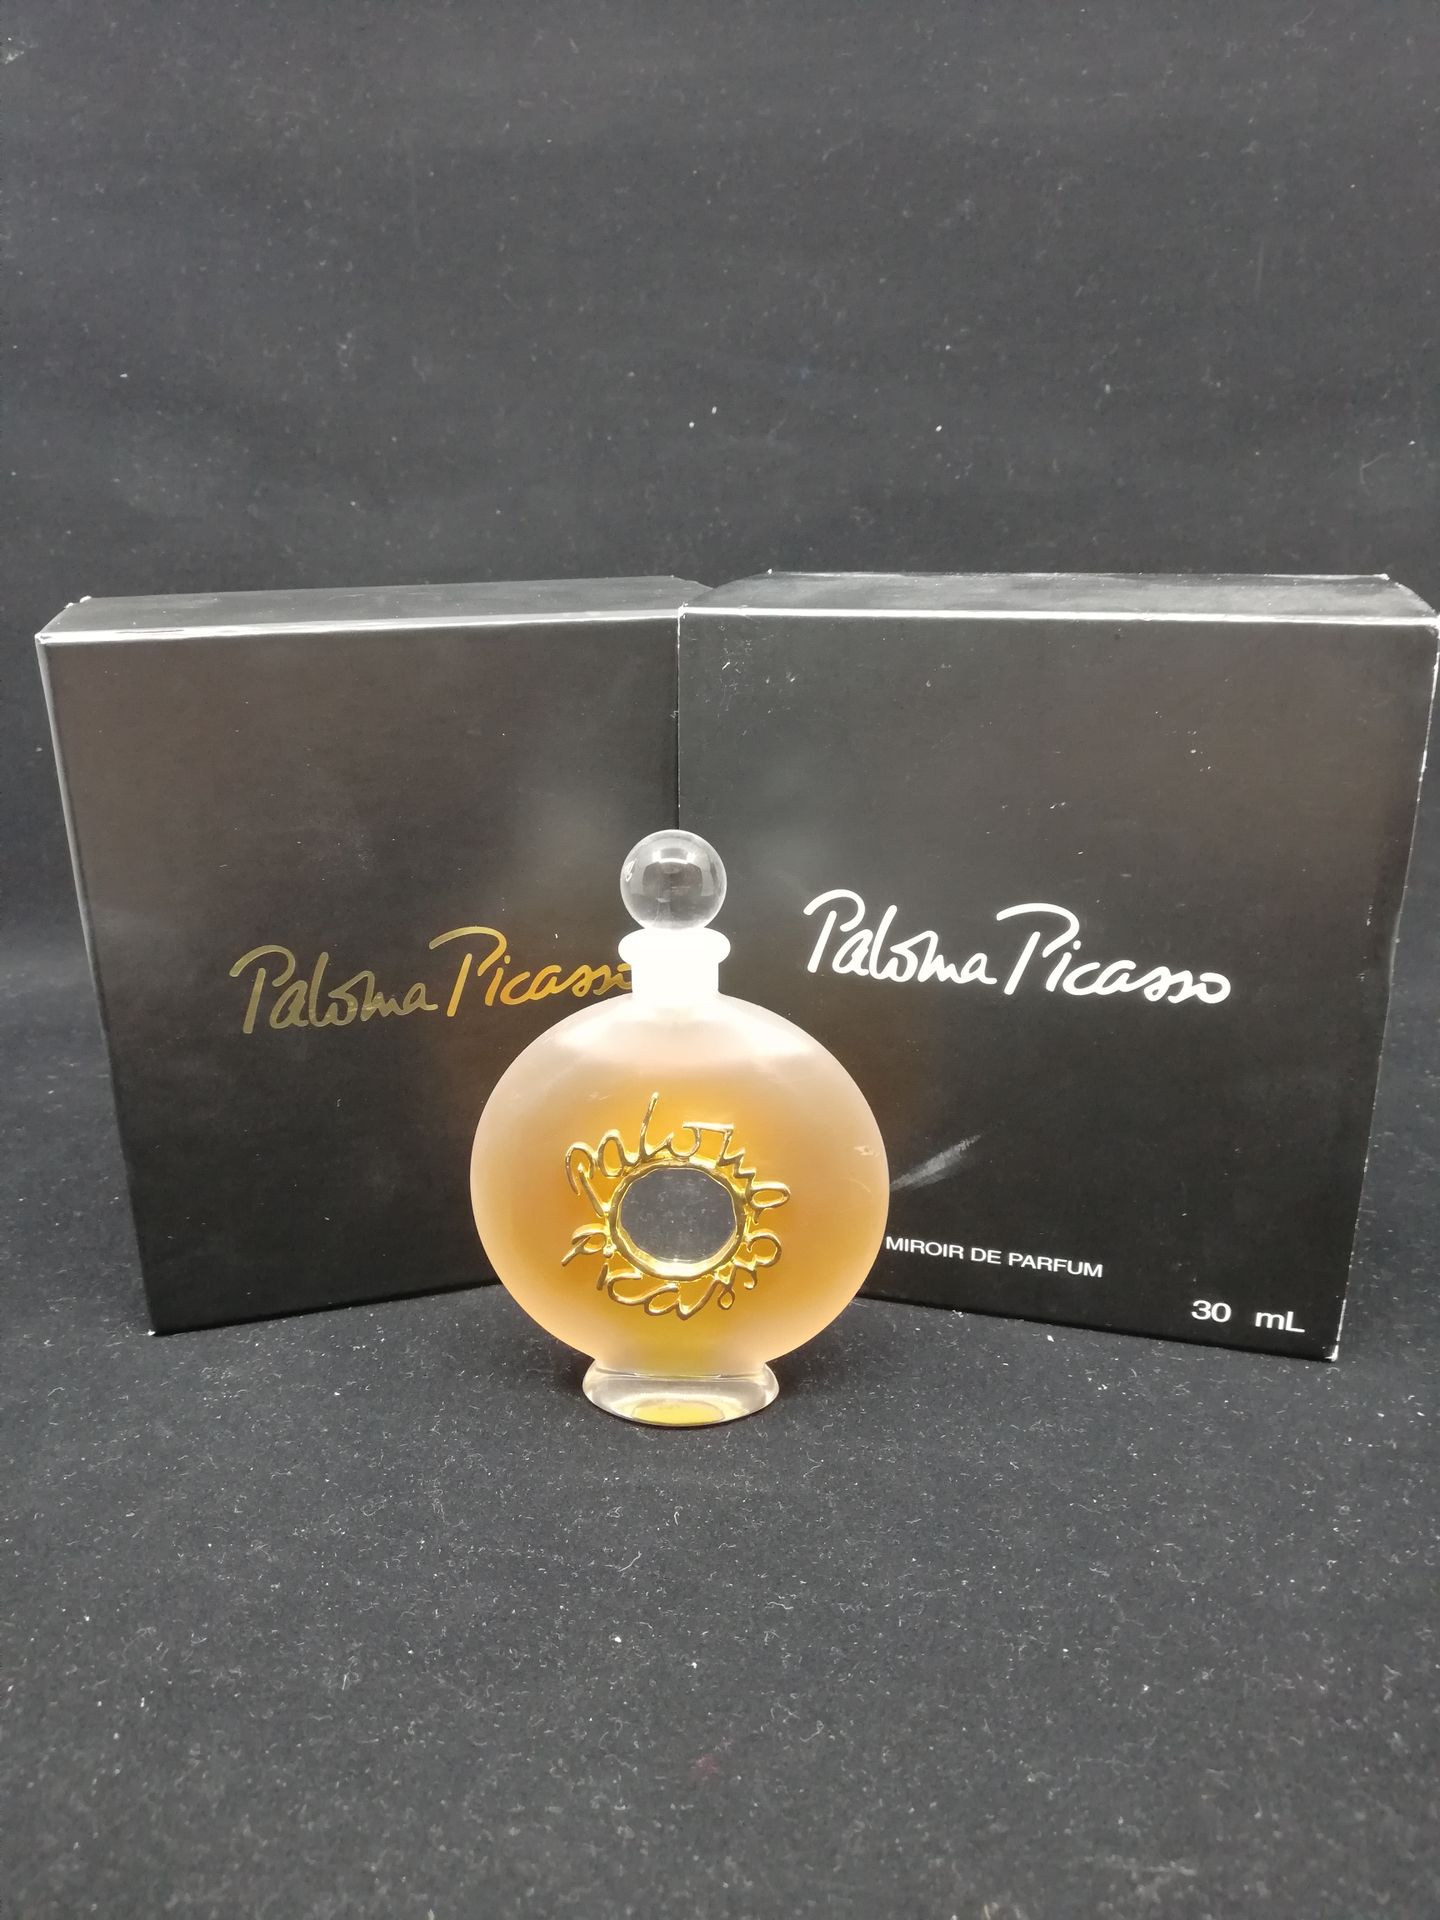 Null Paloma Picasso - (anni '90)

Flacone edizione "Miroir de Parfum" numerato 1&hellip;